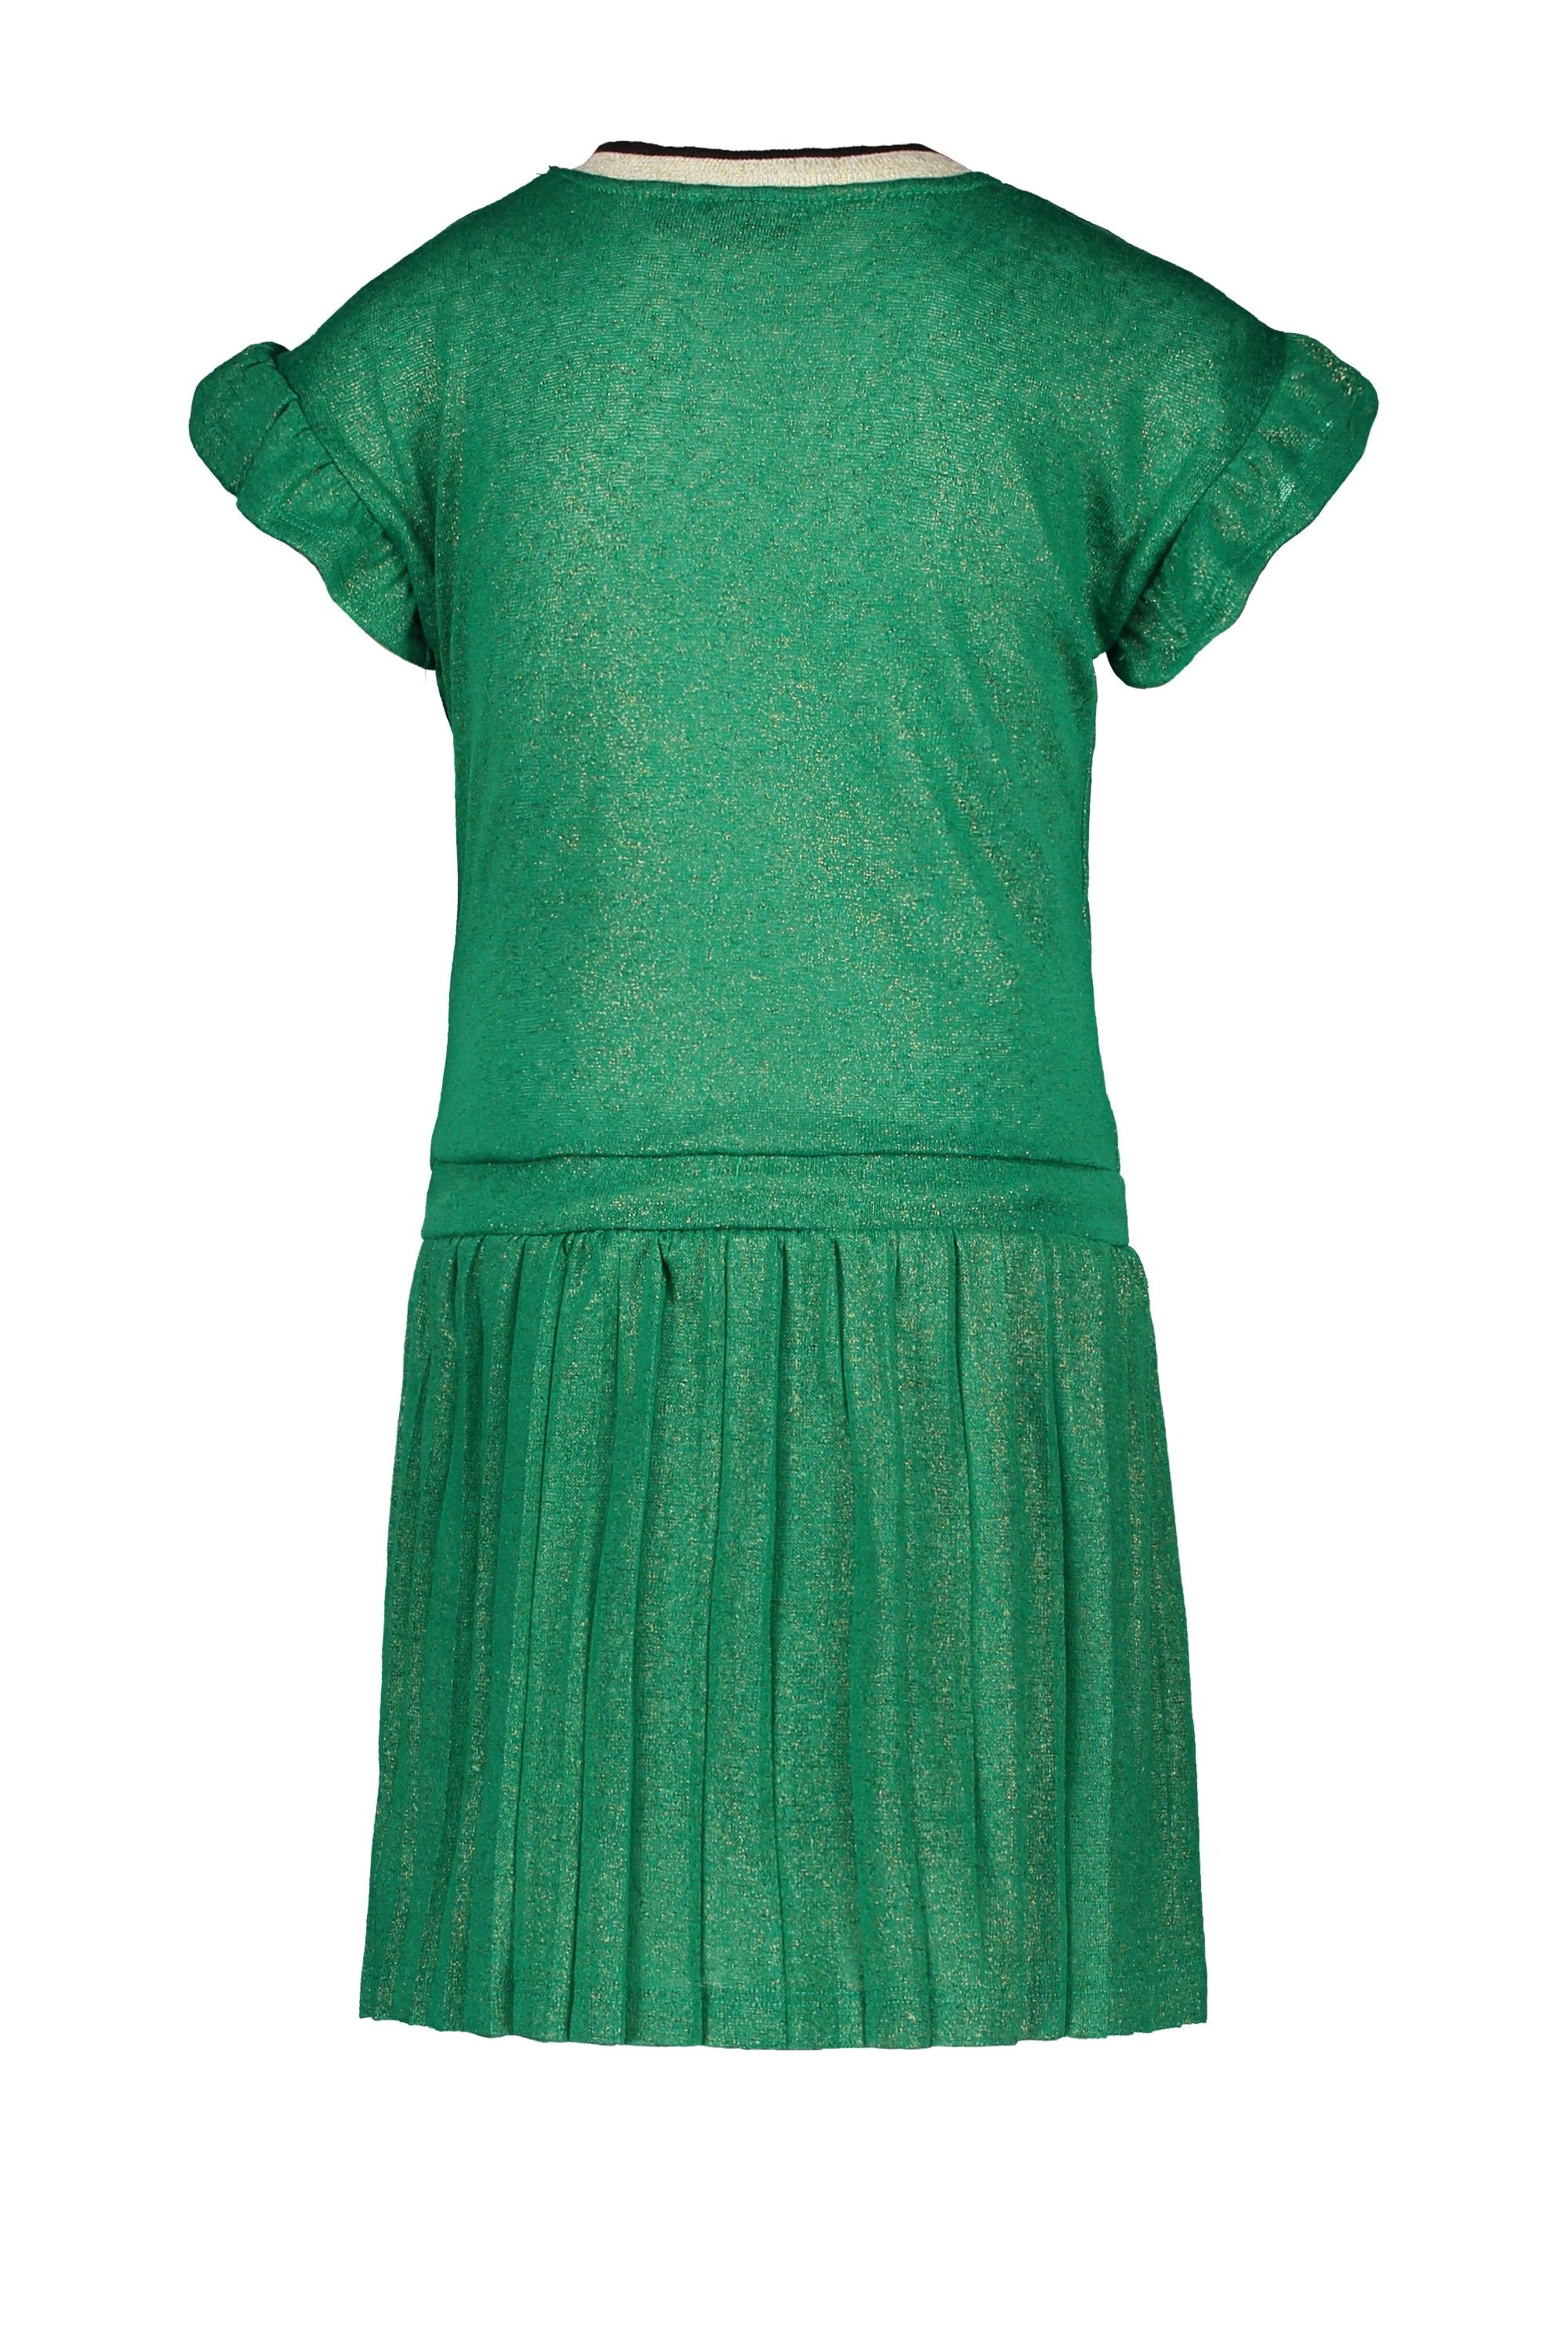 Meisjes Flo girls metallic jersey dress van Flo in de kleur Sea green in maat 128.